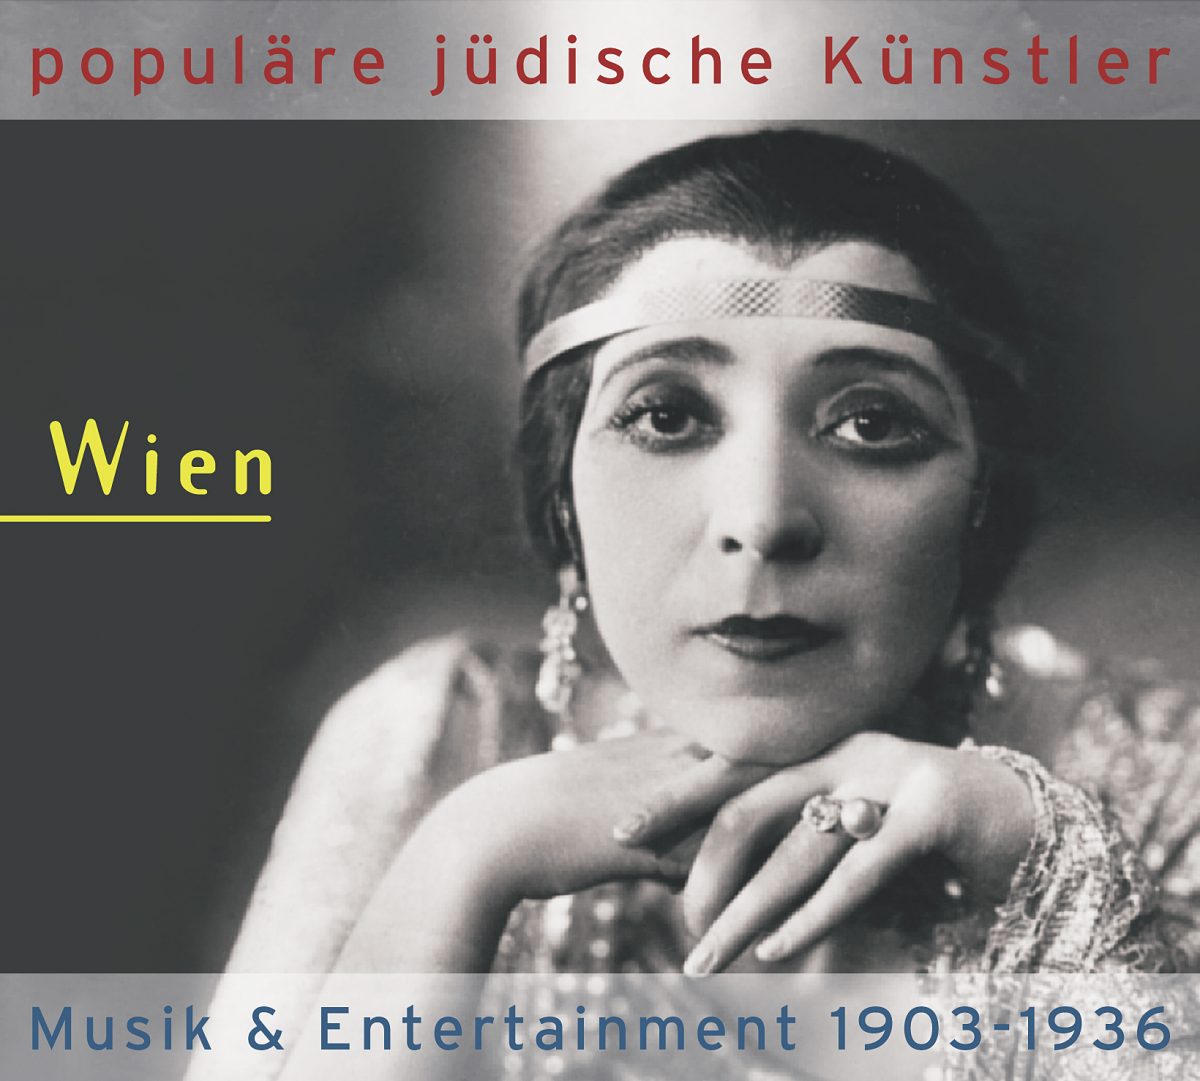 Populäre Jüdische Künstler - Berlin, Hamburg, München - Musik & Entertainment 1903-1933 1